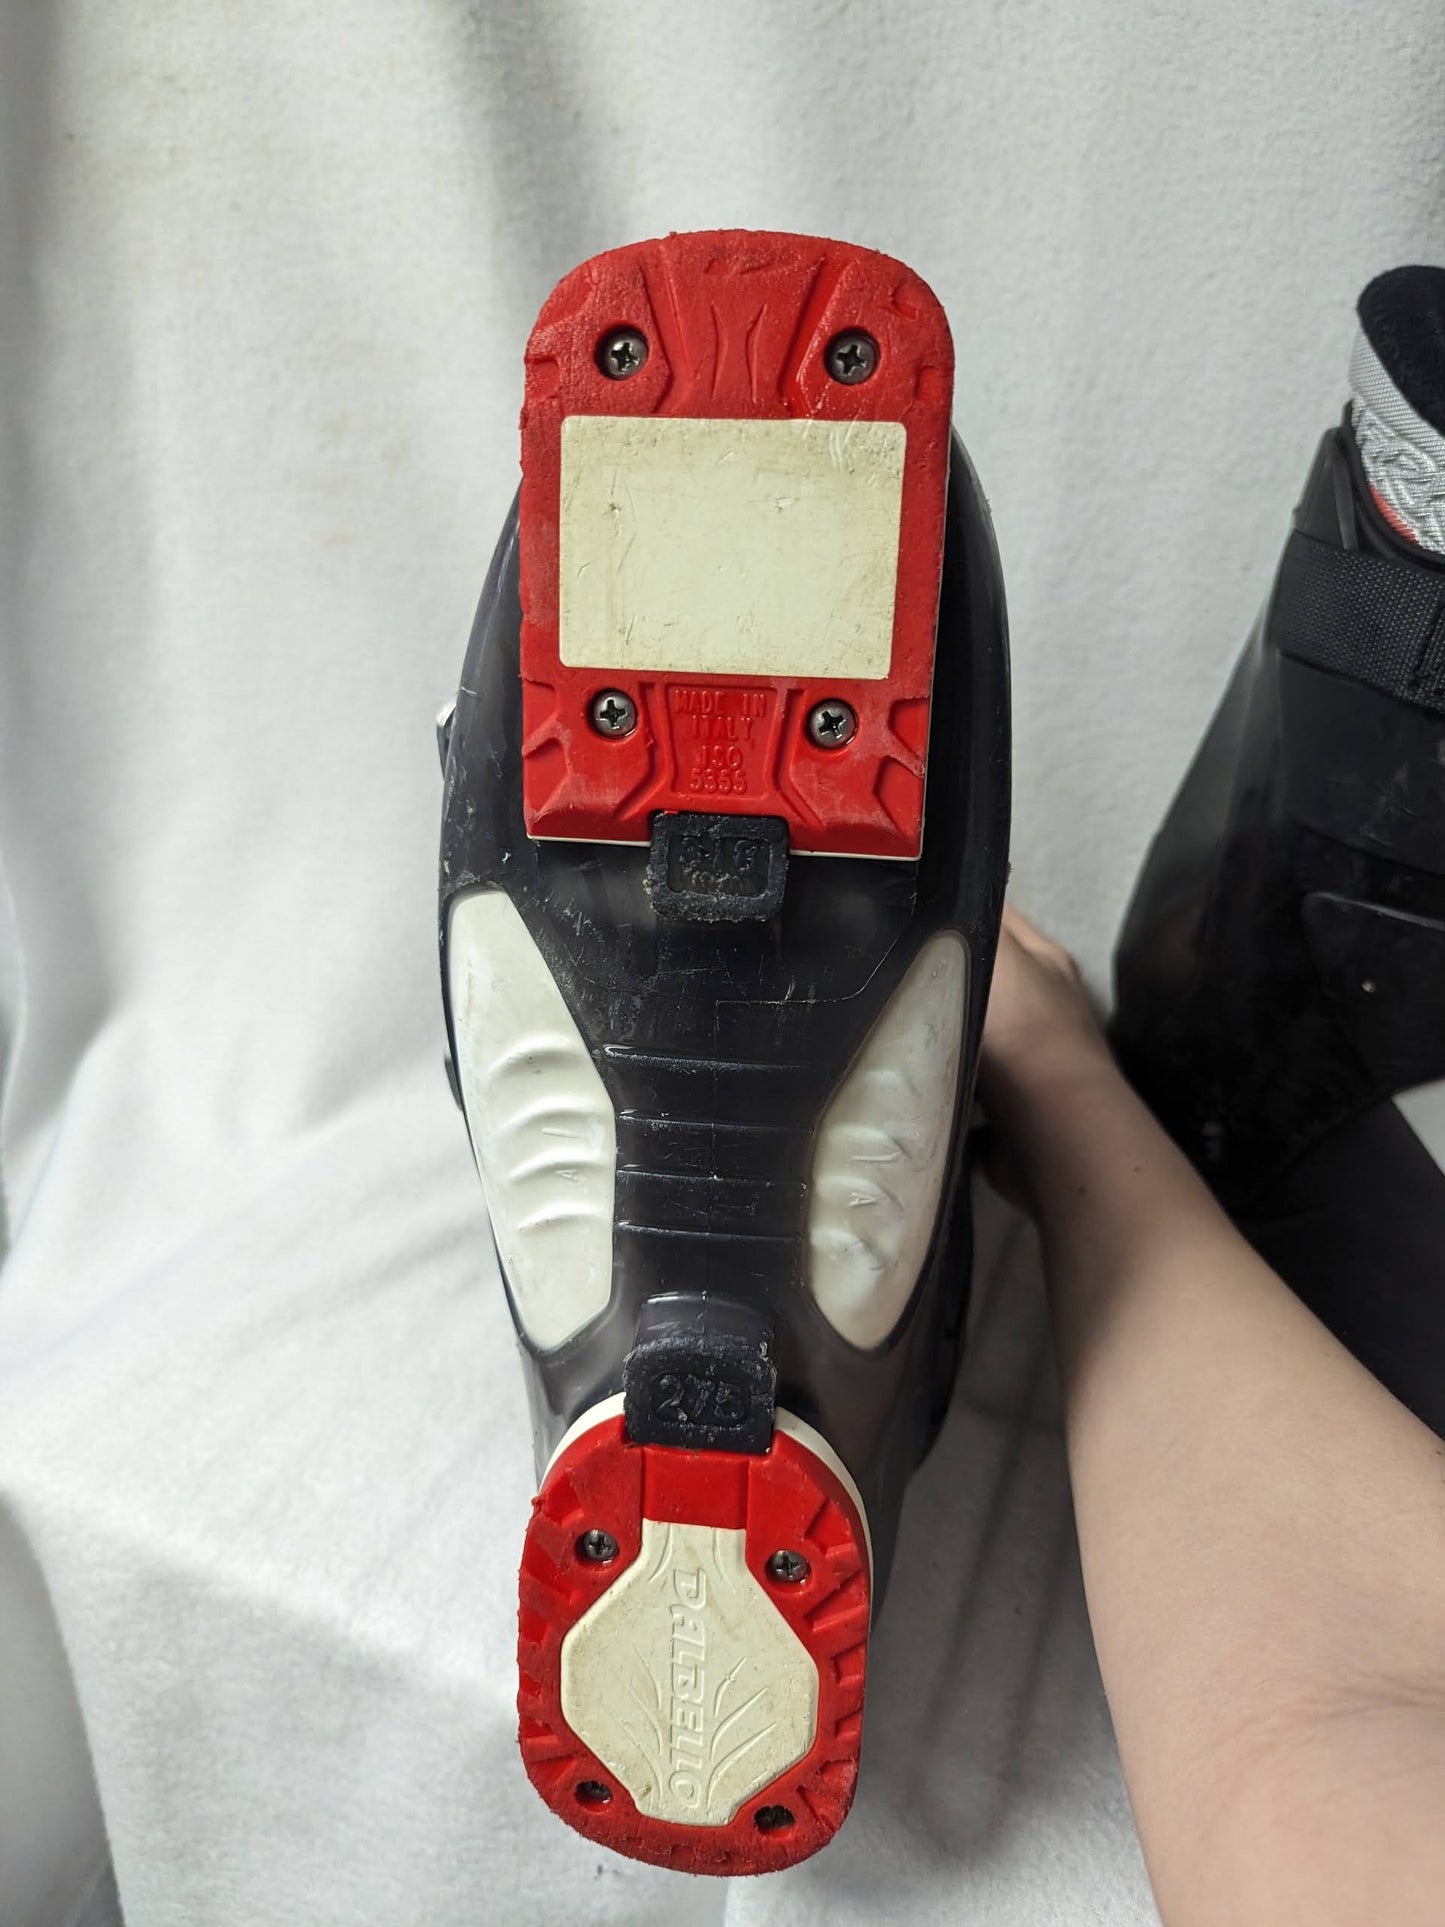 Dalbello Aerro Ski Boots Size Mondo 27.5 Black Used